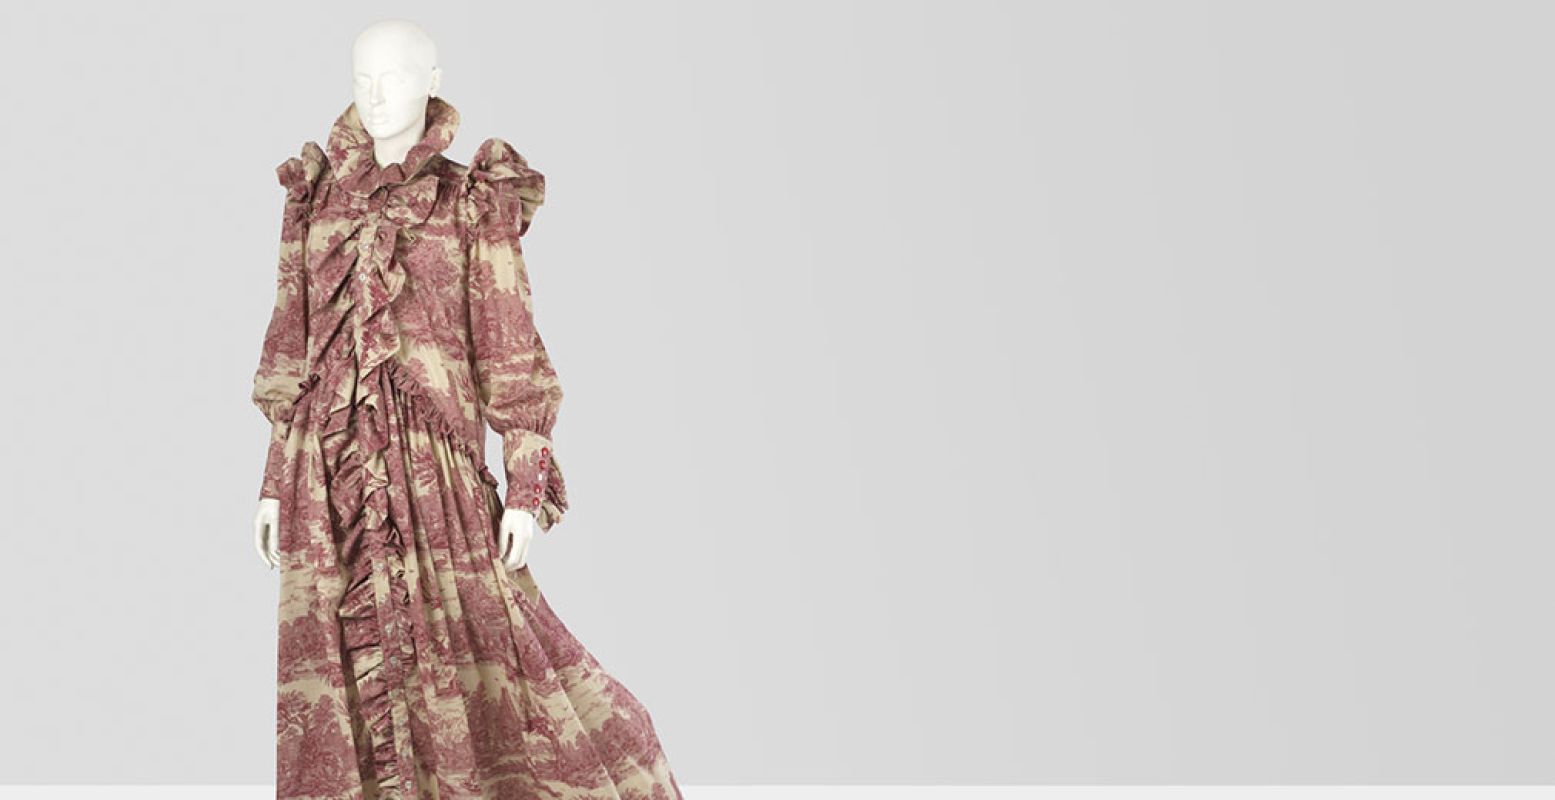 Toile de Jouy jurk uit collectie Wardrobe Three 2016, van Ronald van der Kemp. Collectie Centraal Museum Utrecht; aankoop 2017. Foto: Image & copyrights CMU / Adriaan van Dam 2017.